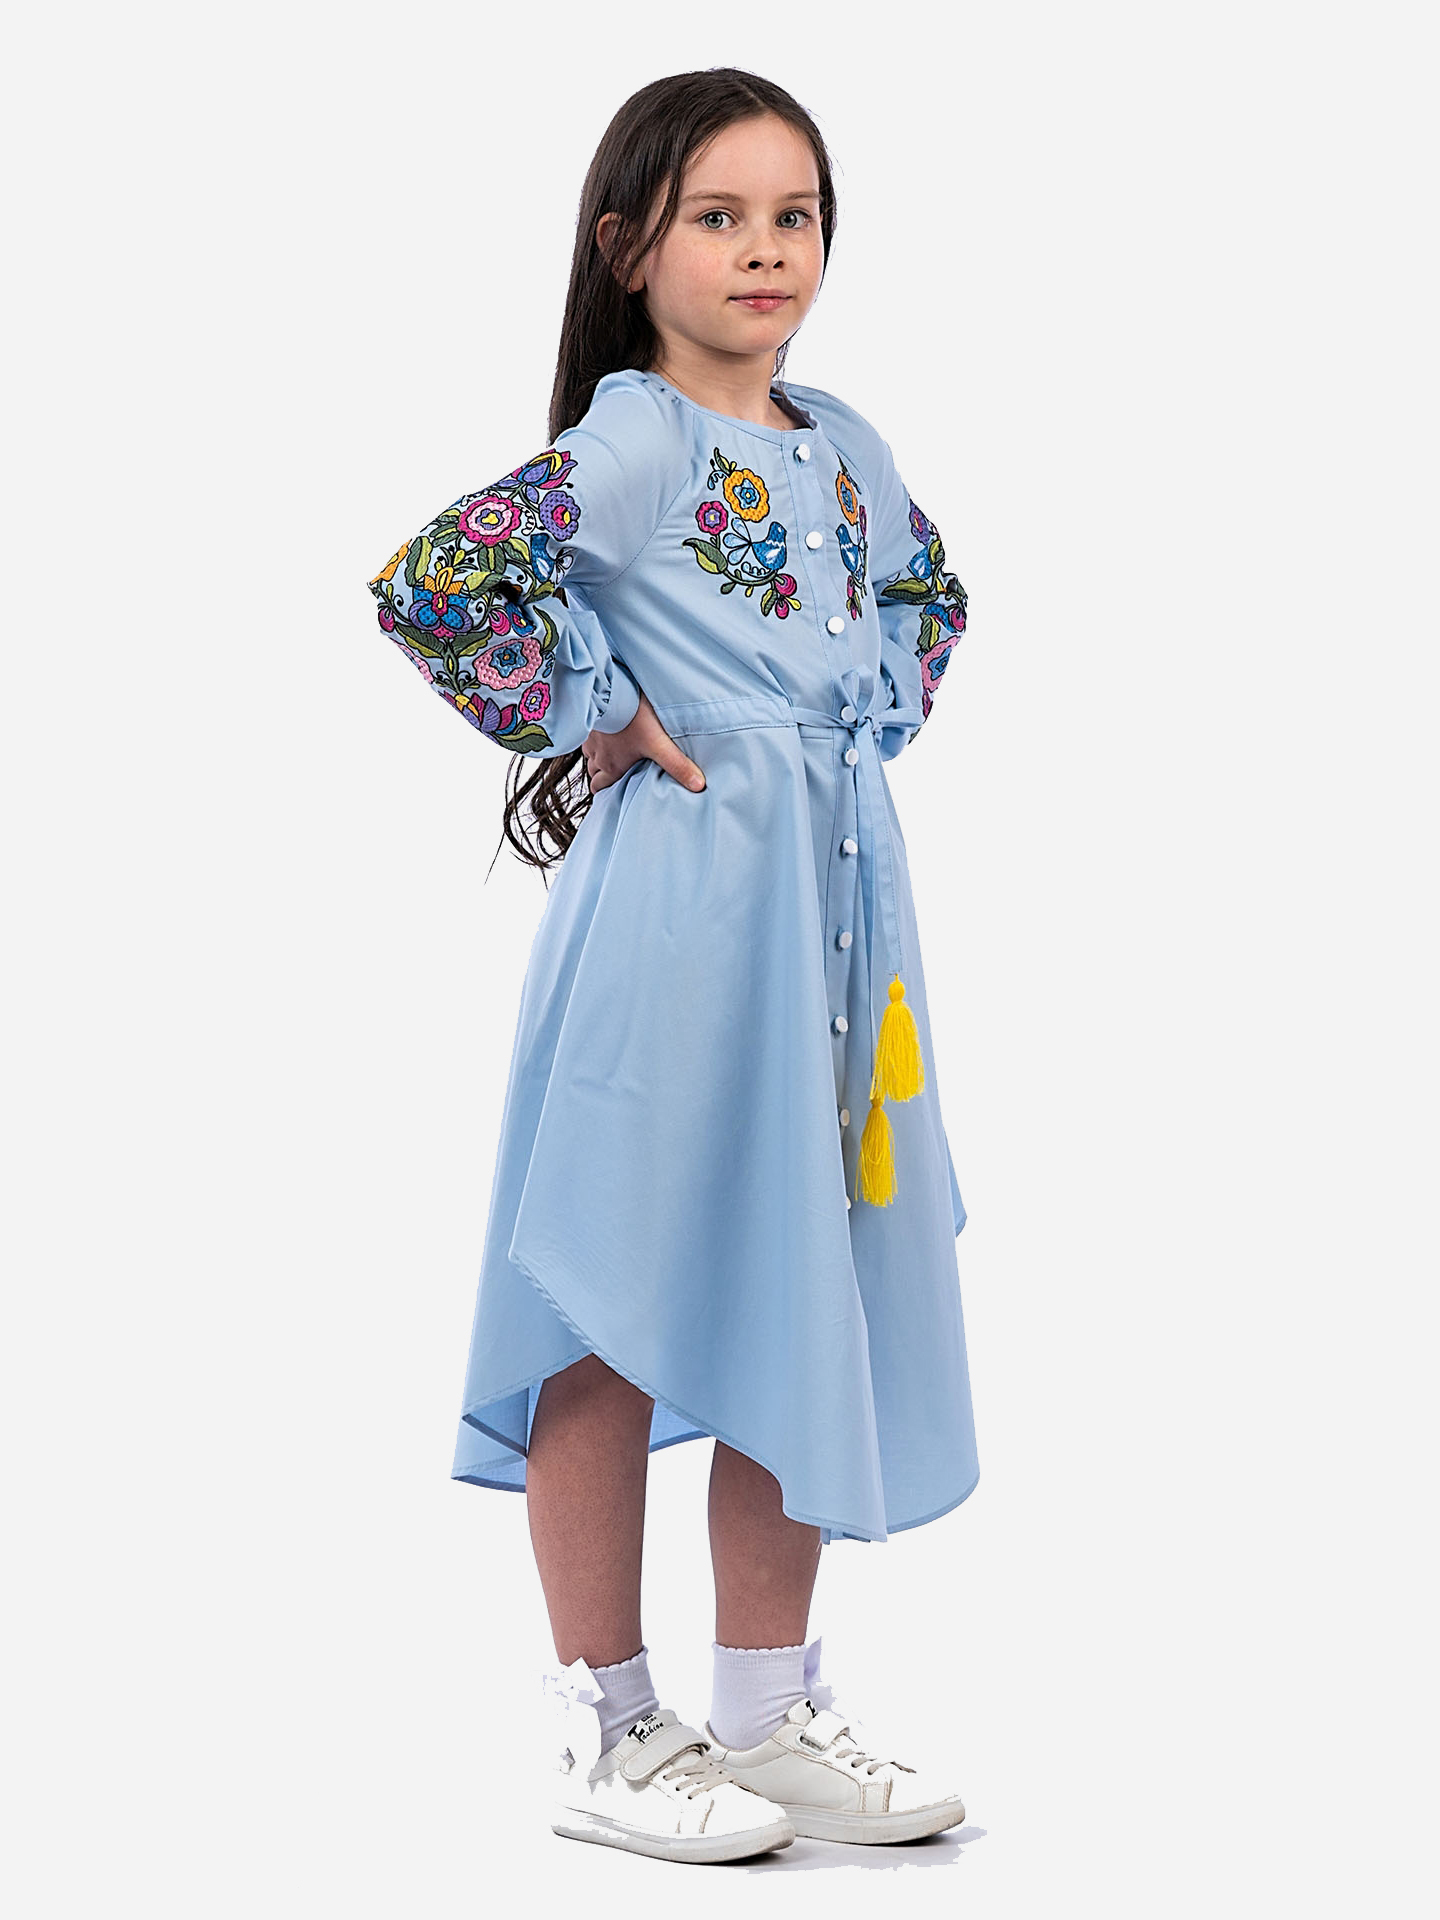 Ярмарка тщеславия: как миллениалы развивают рынок детской одежды